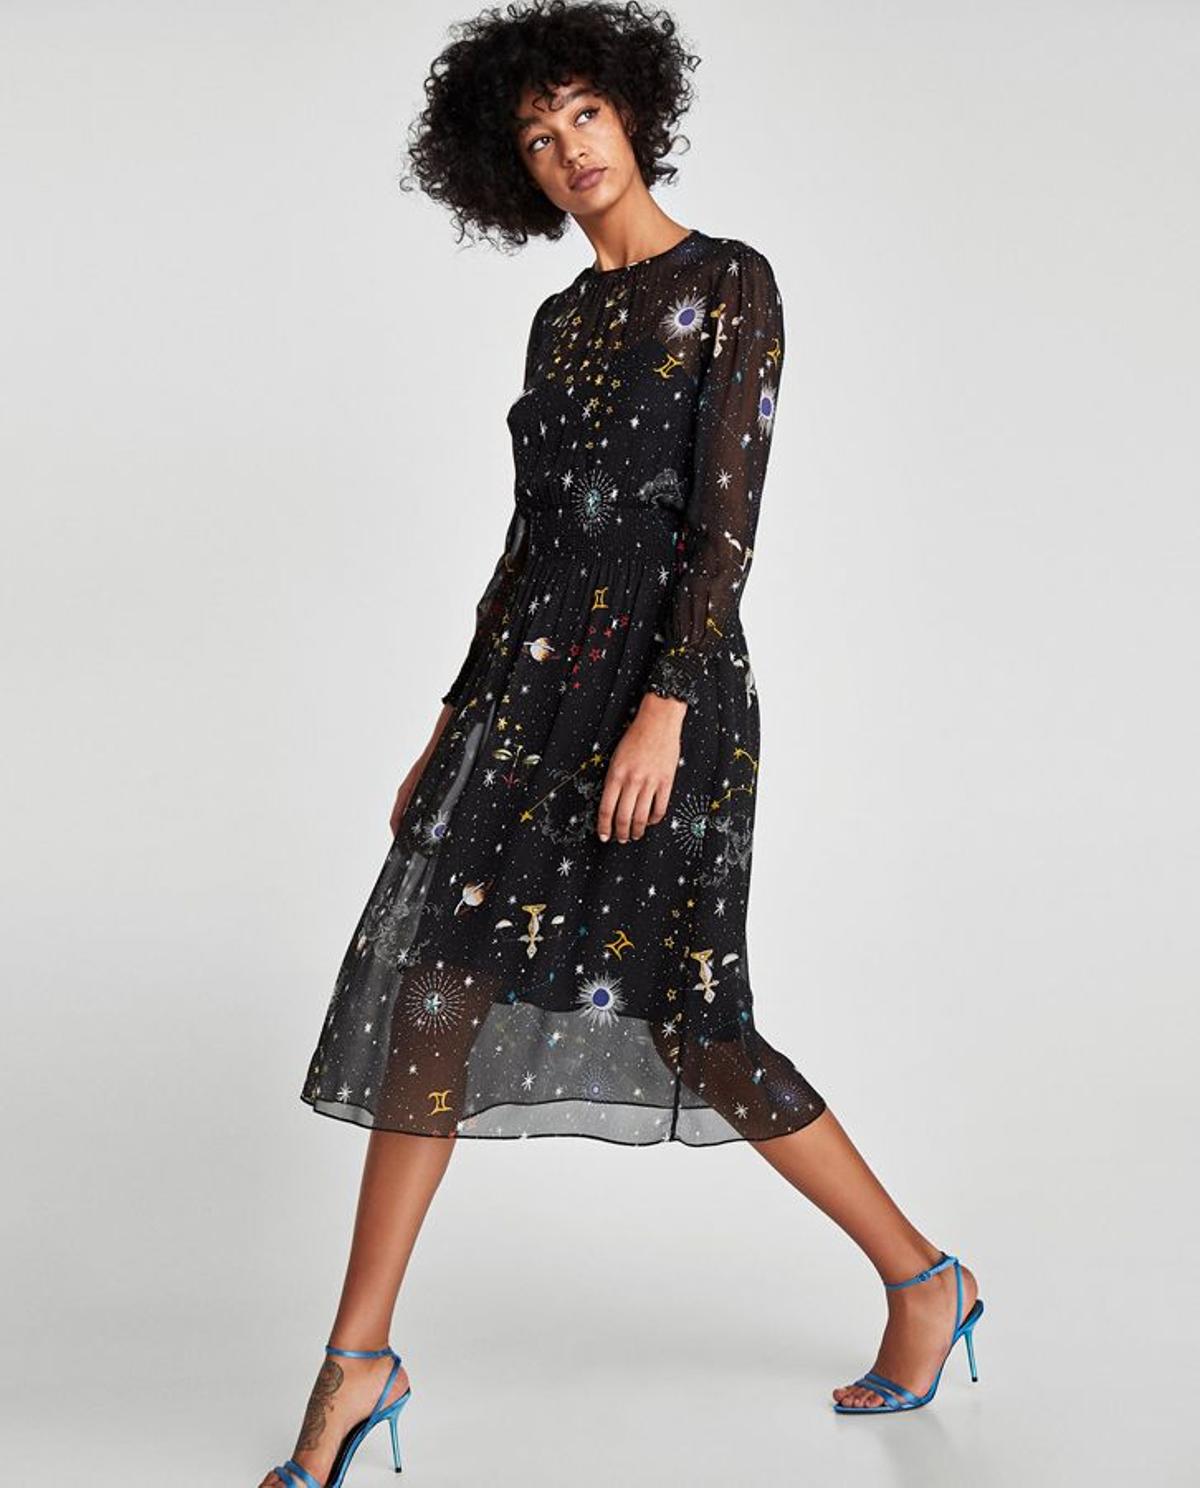 'Shopping' para el Black Friday: vestido 'midi' estampado, de Zara